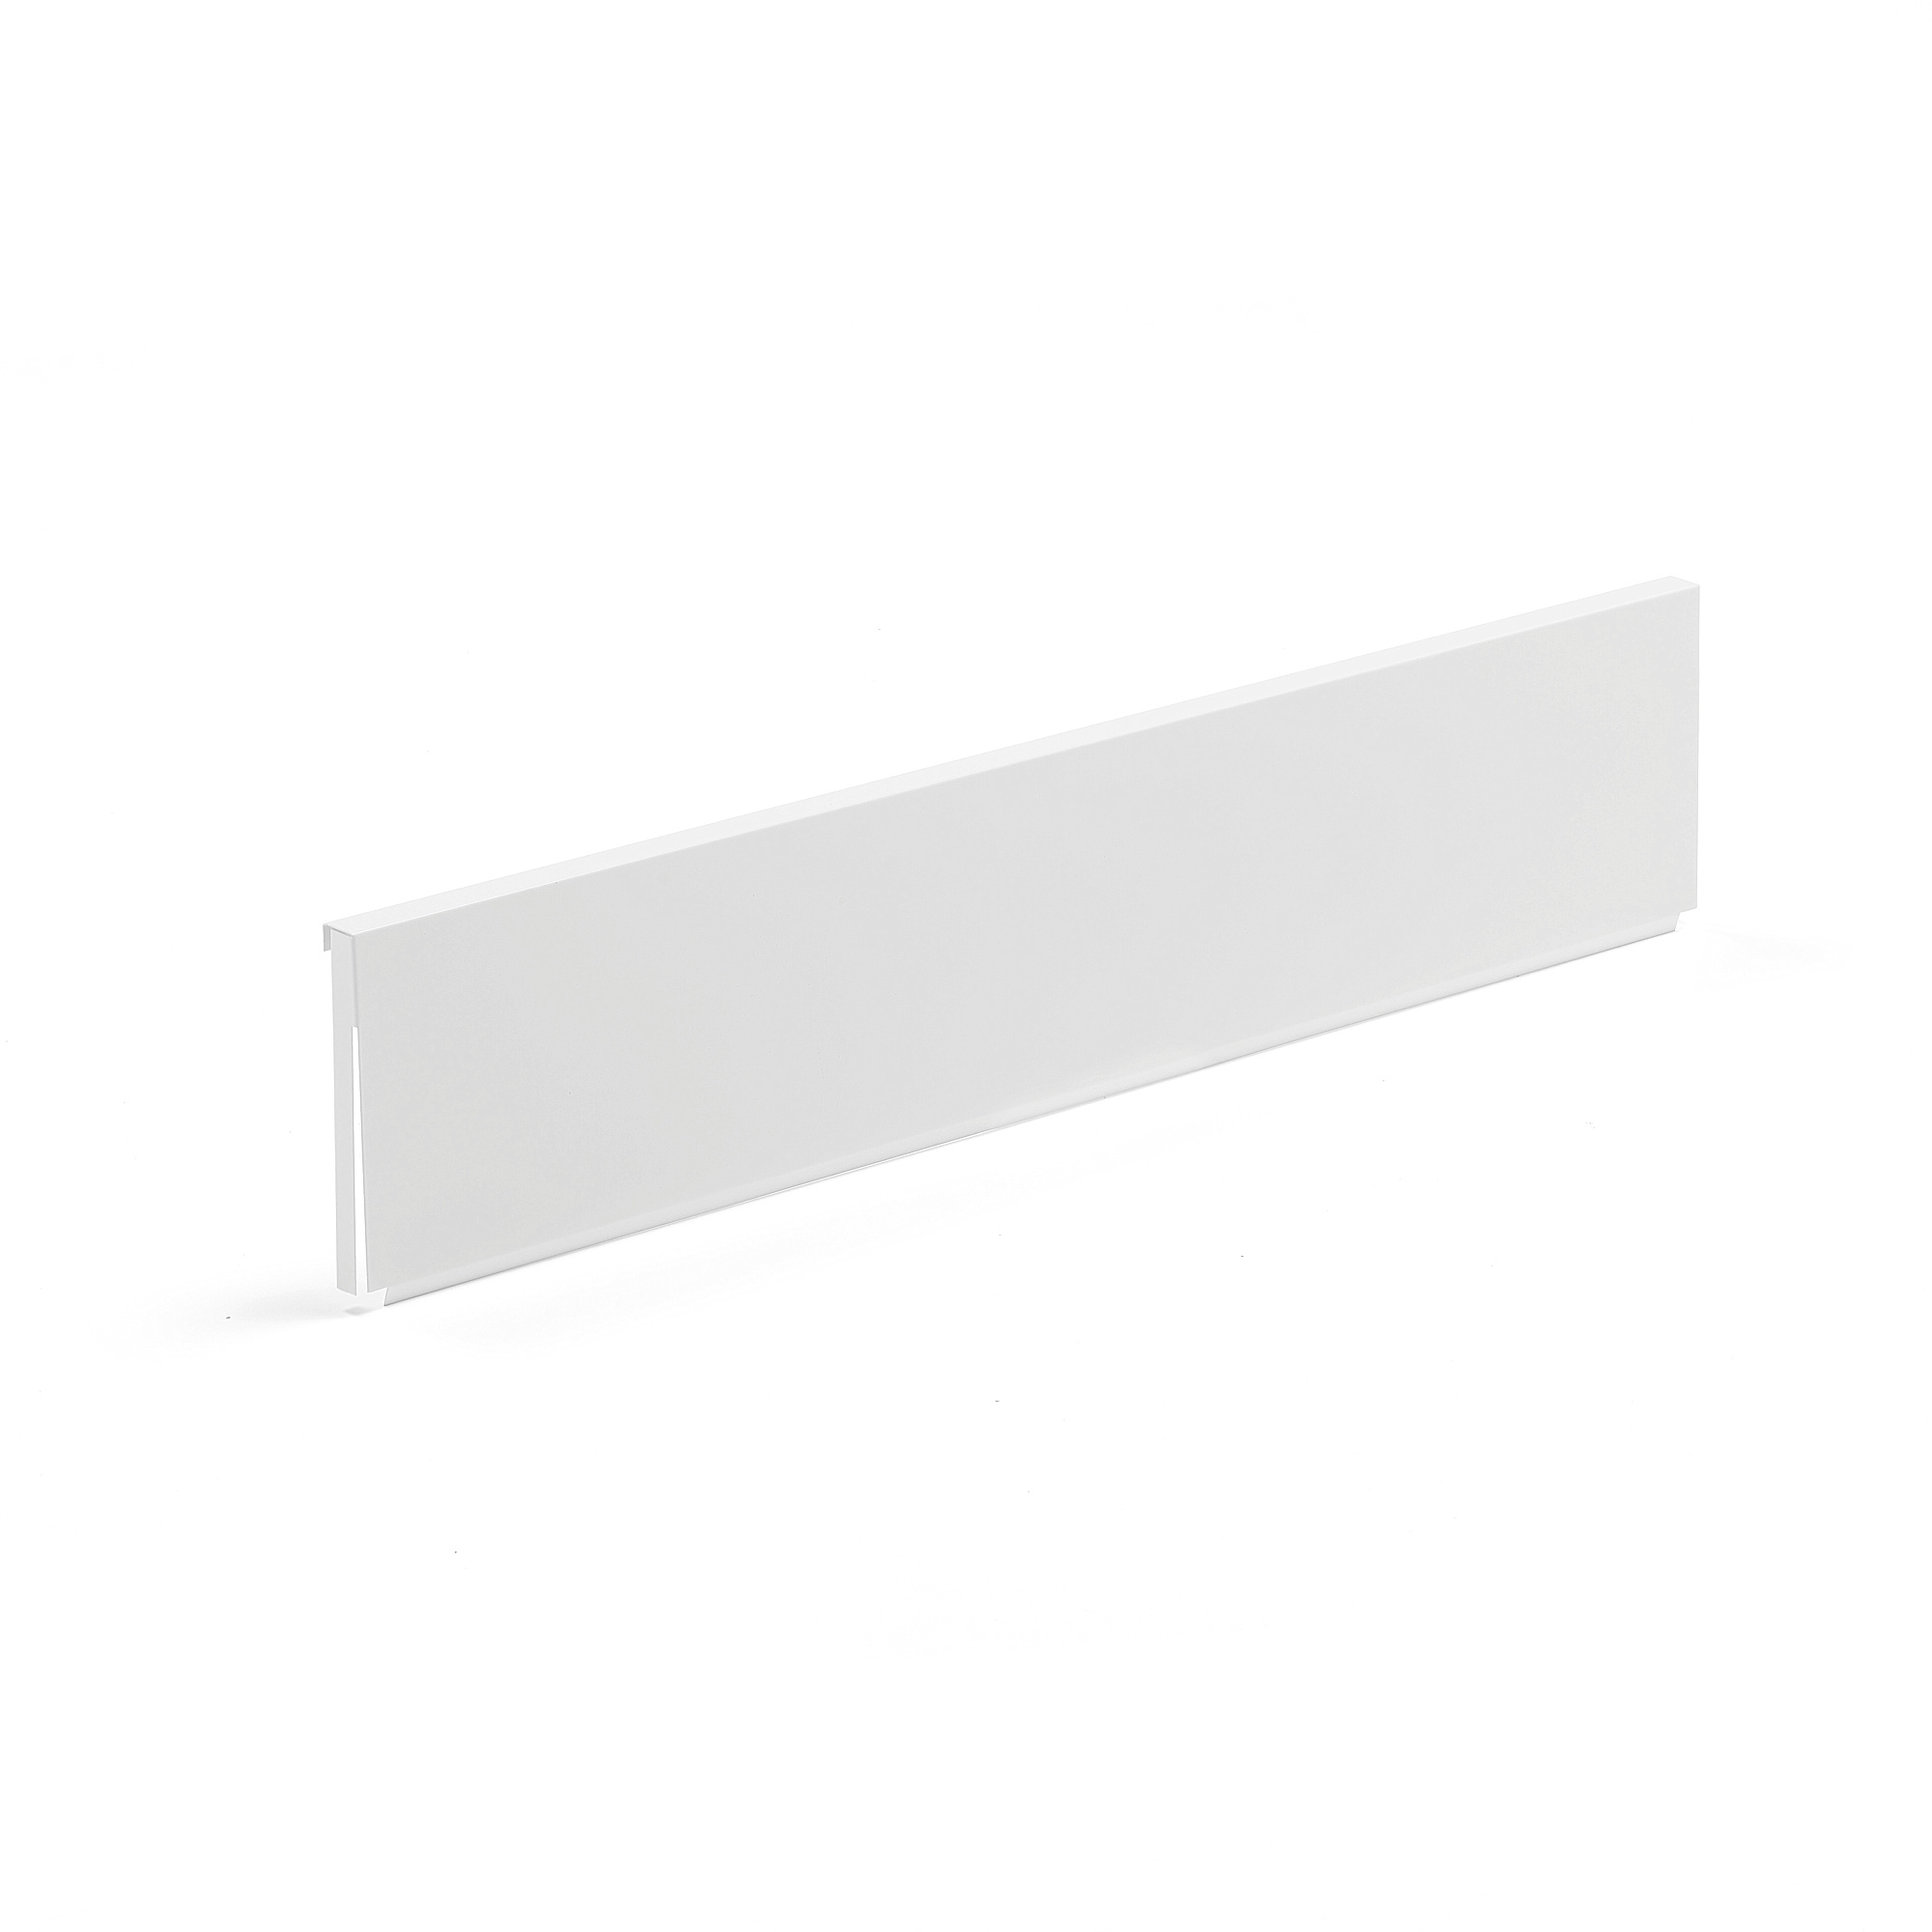 Vrchní panel SHOP, jednostranný, 190x900 mm, bílý